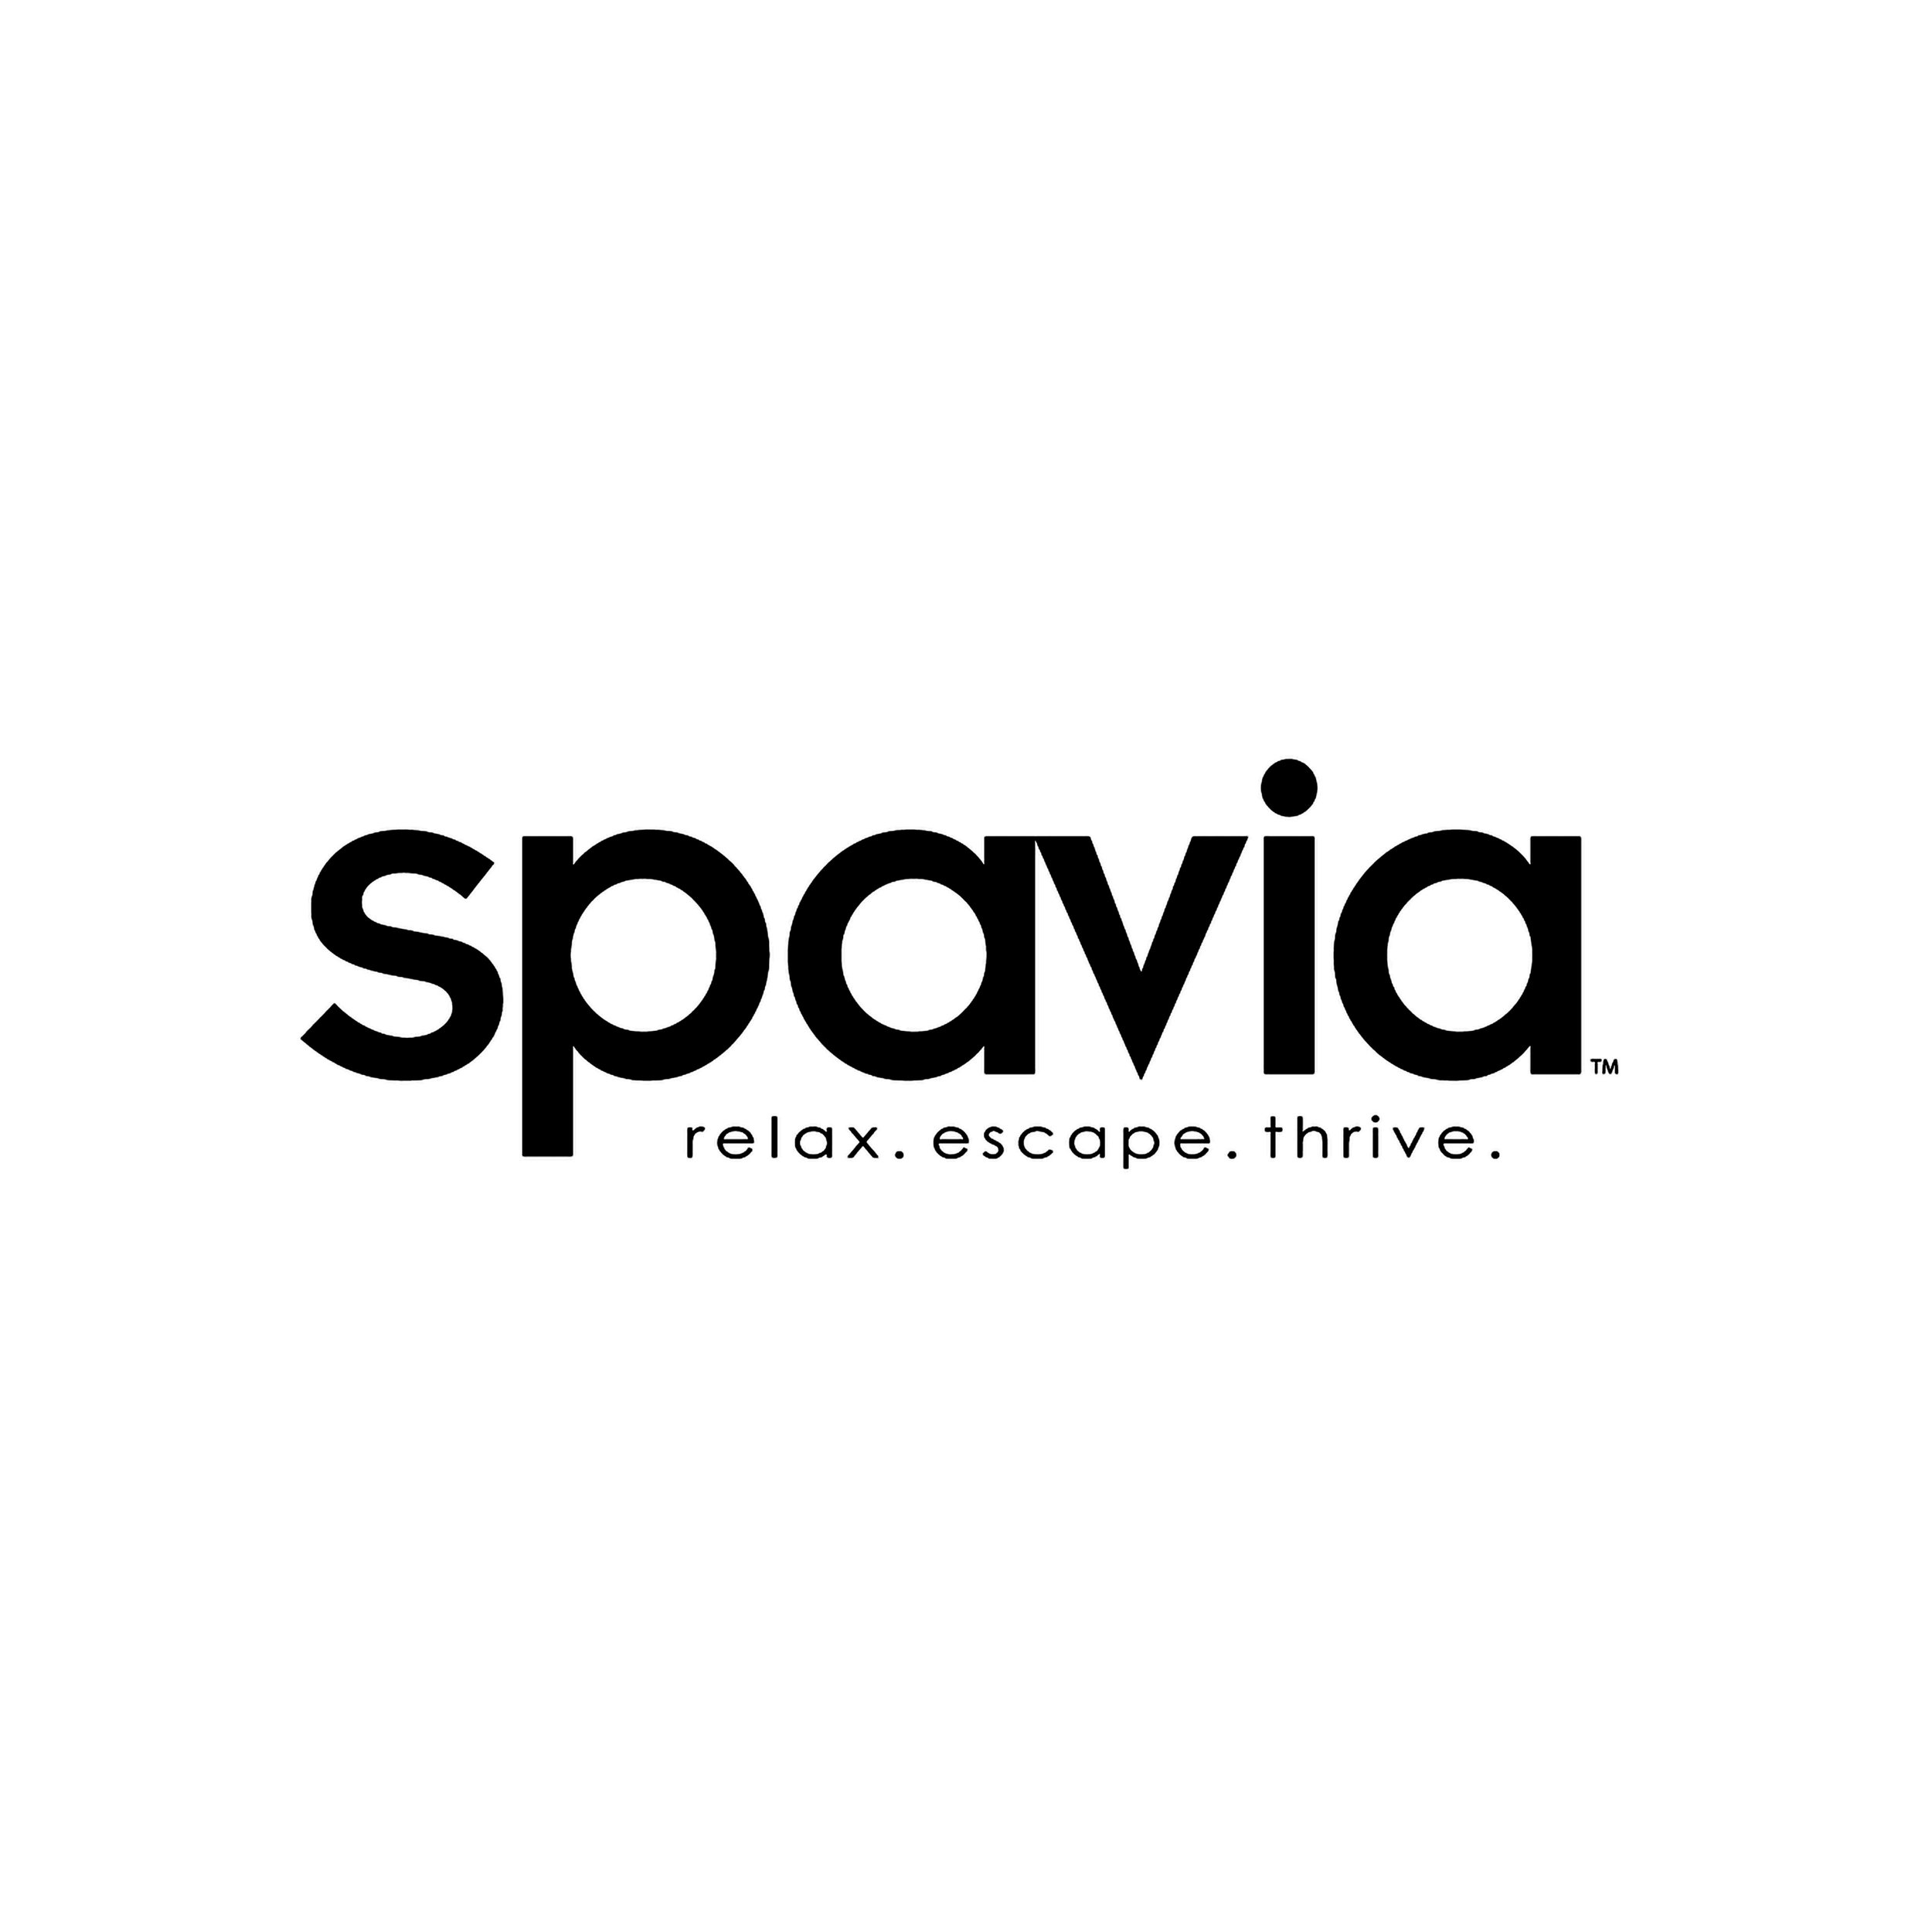 Spavia Logo.jpg